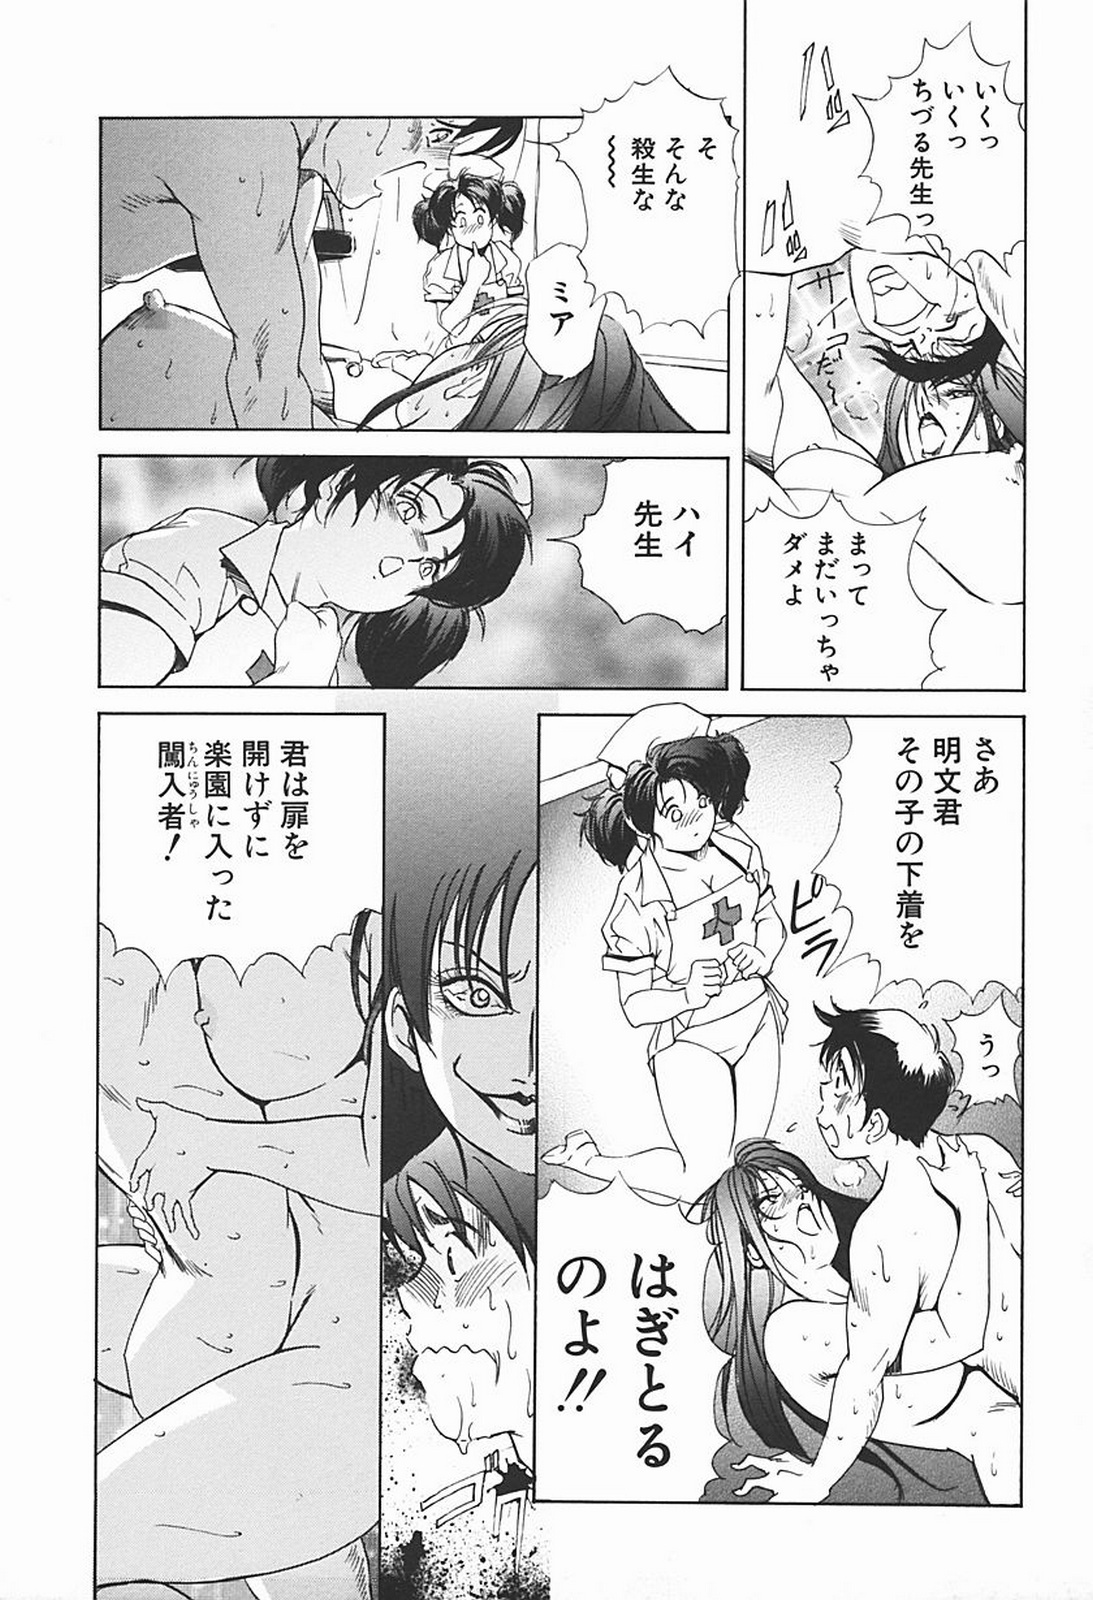 [Misaki Yukihiro] Body Therapy page 26 full